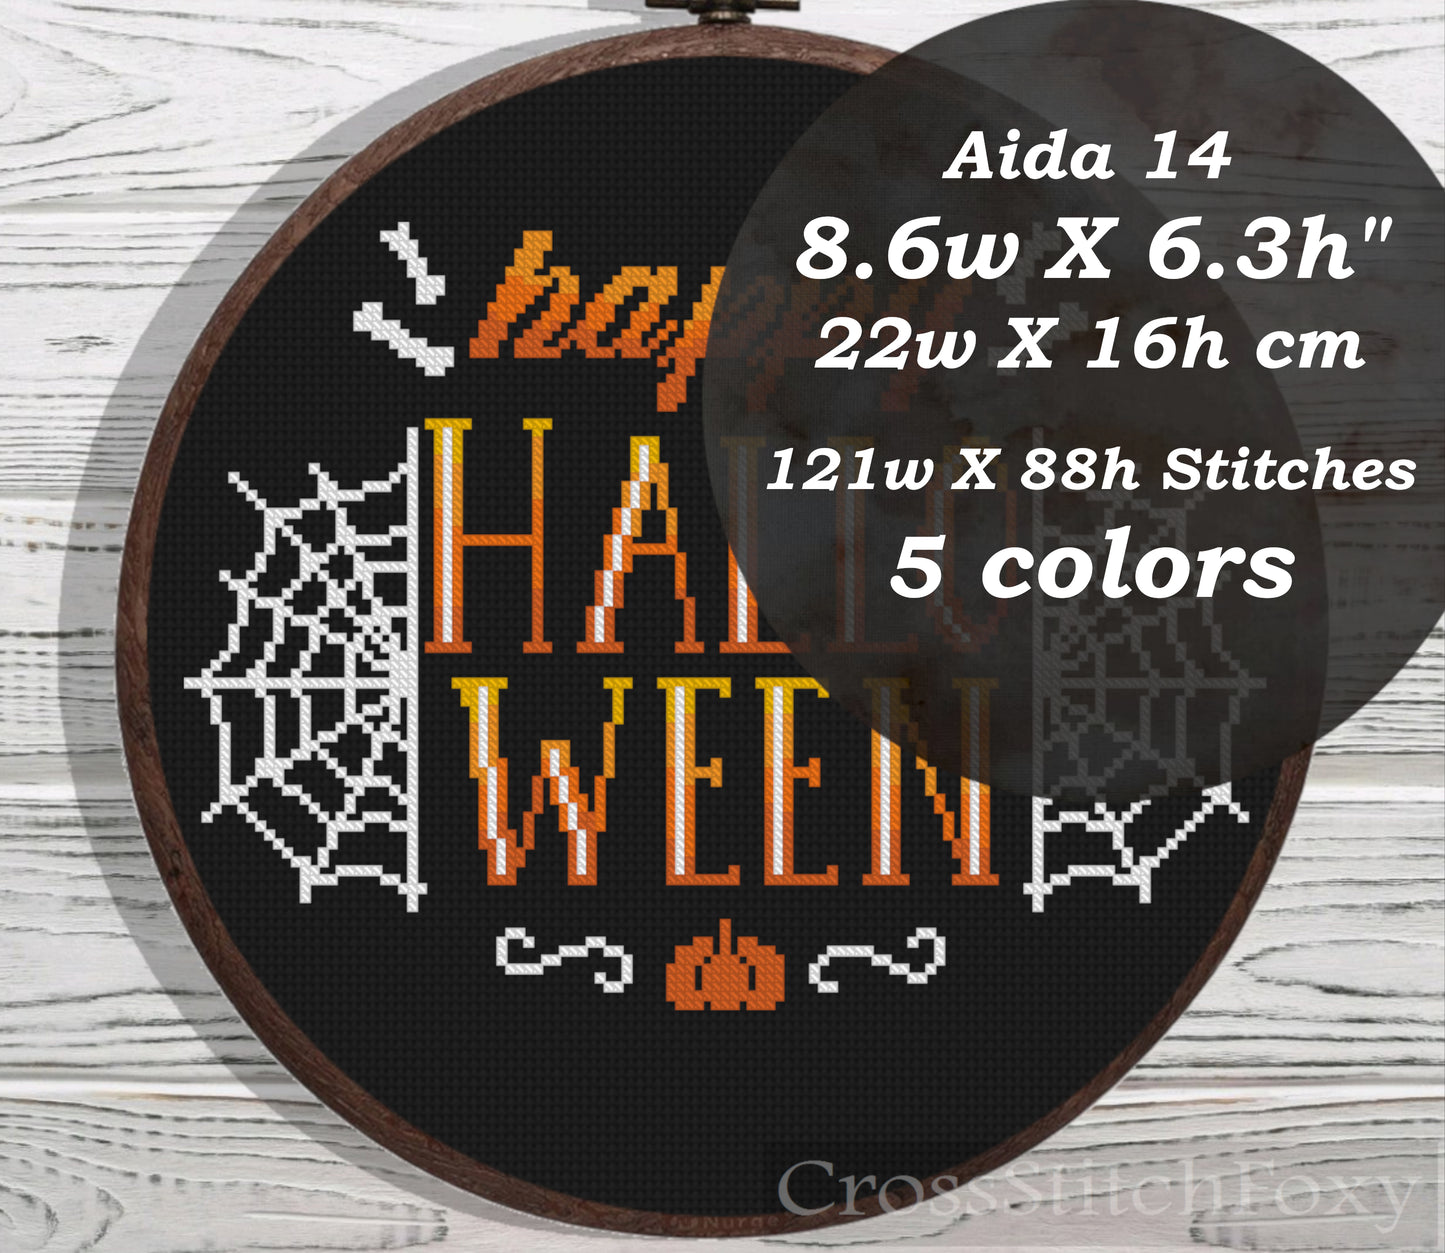 Happy Halloween spooky lettering cross stitch pattern